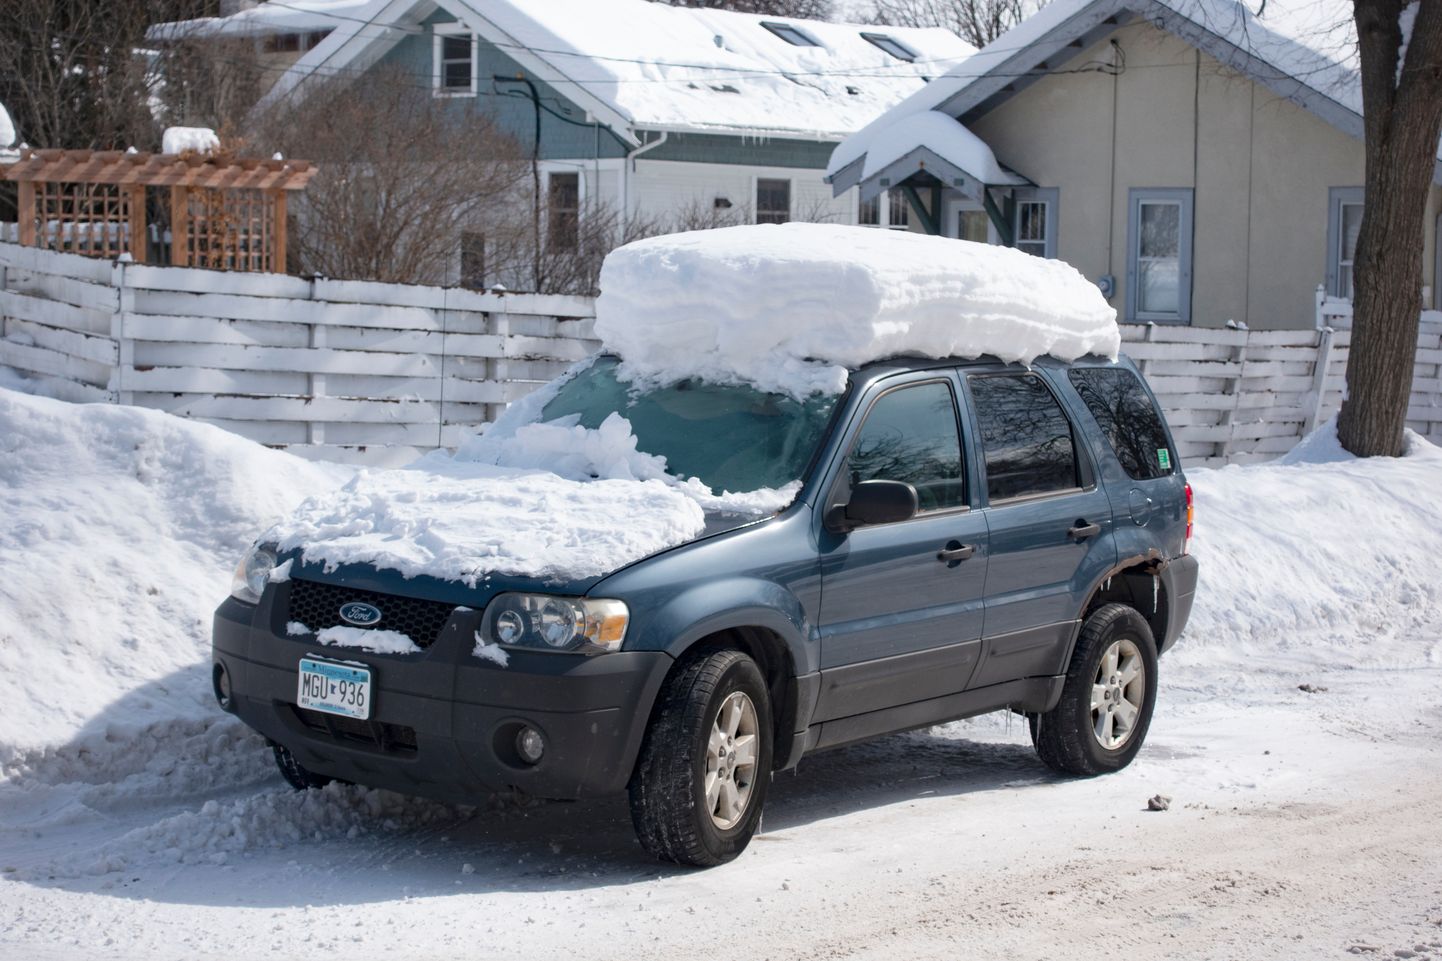 Автомобиль после снегопада. Иллюстративное фото